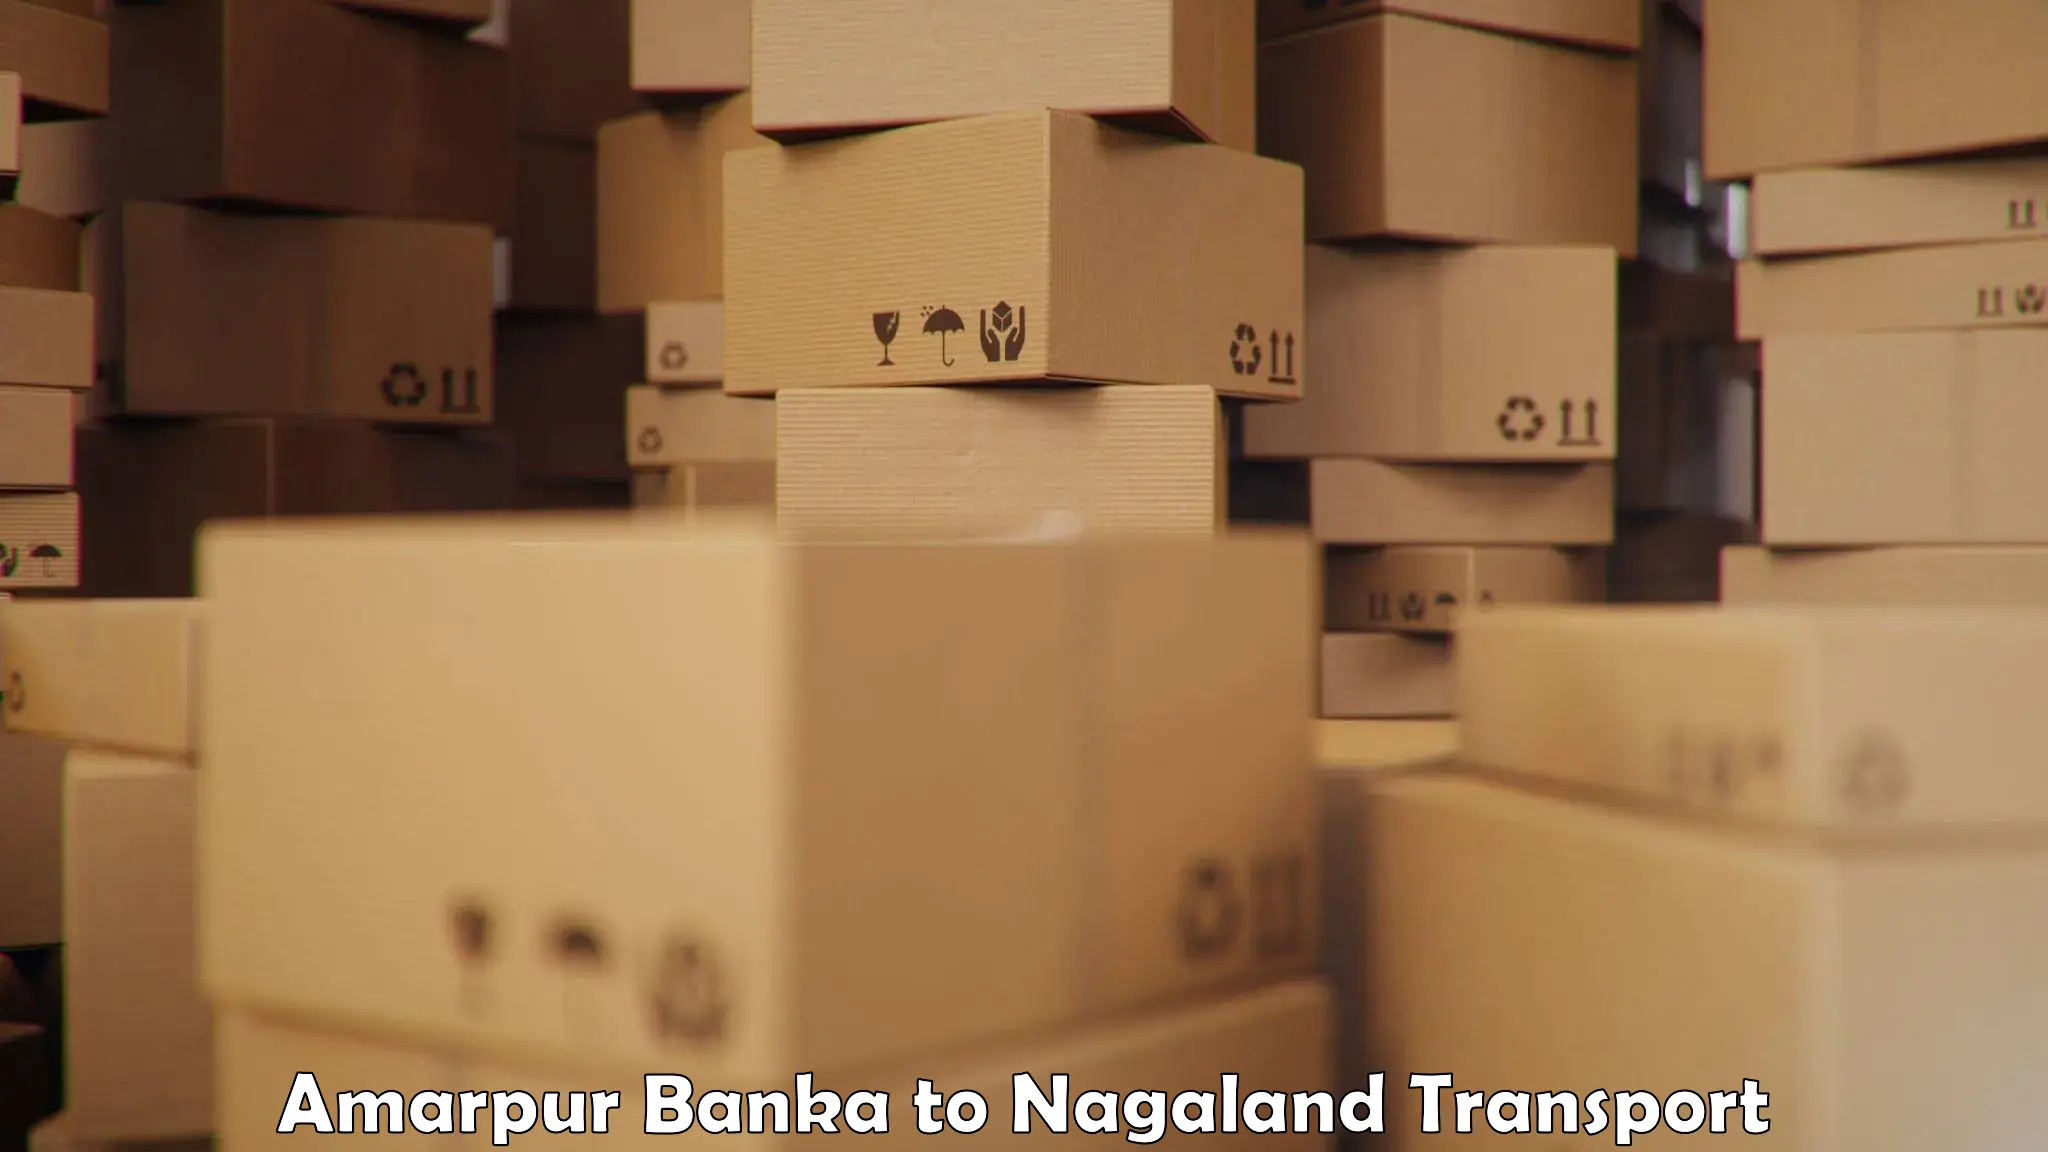 Parcel transport services Amarpur Banka to Phek